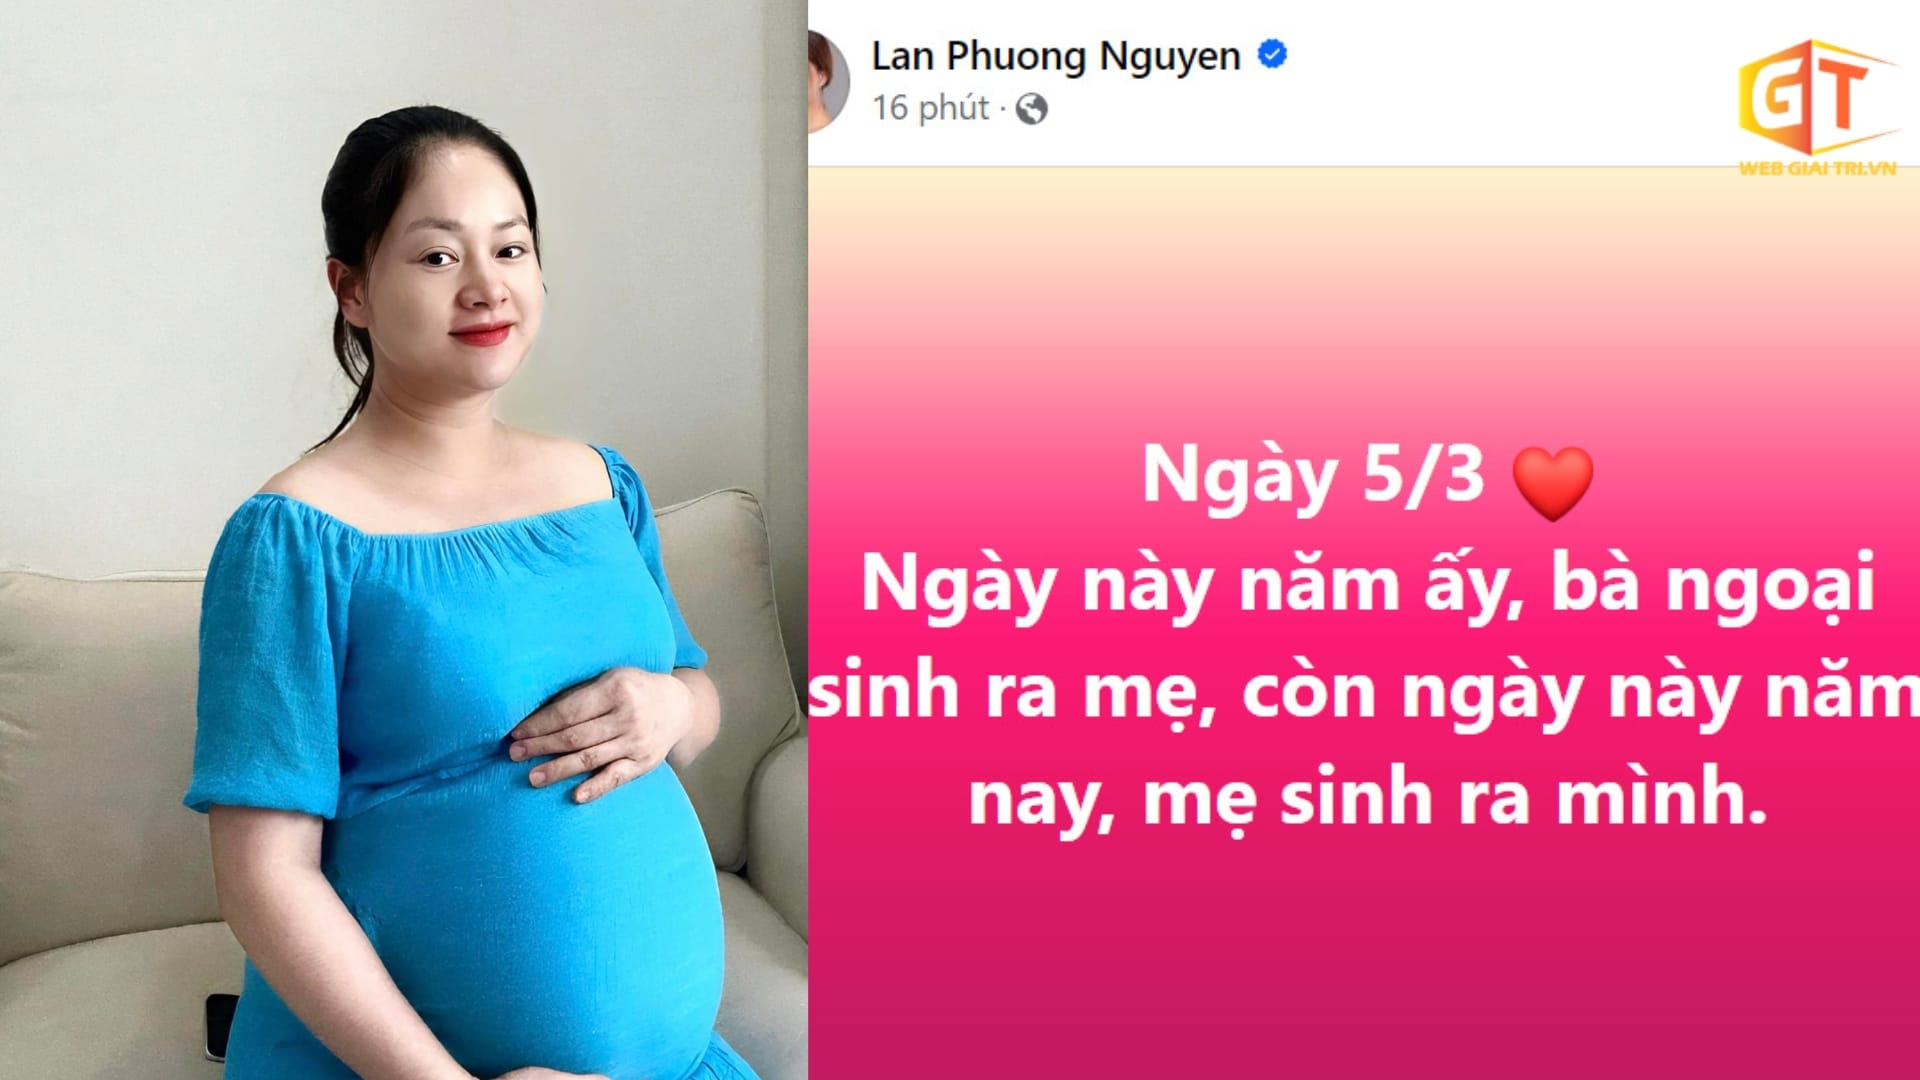 Diễn viên Lan Phương thông báo đã sinh con ở t.uổi 41, tiết lộ điều trùng hợp khiến niềm vui nhân đôi